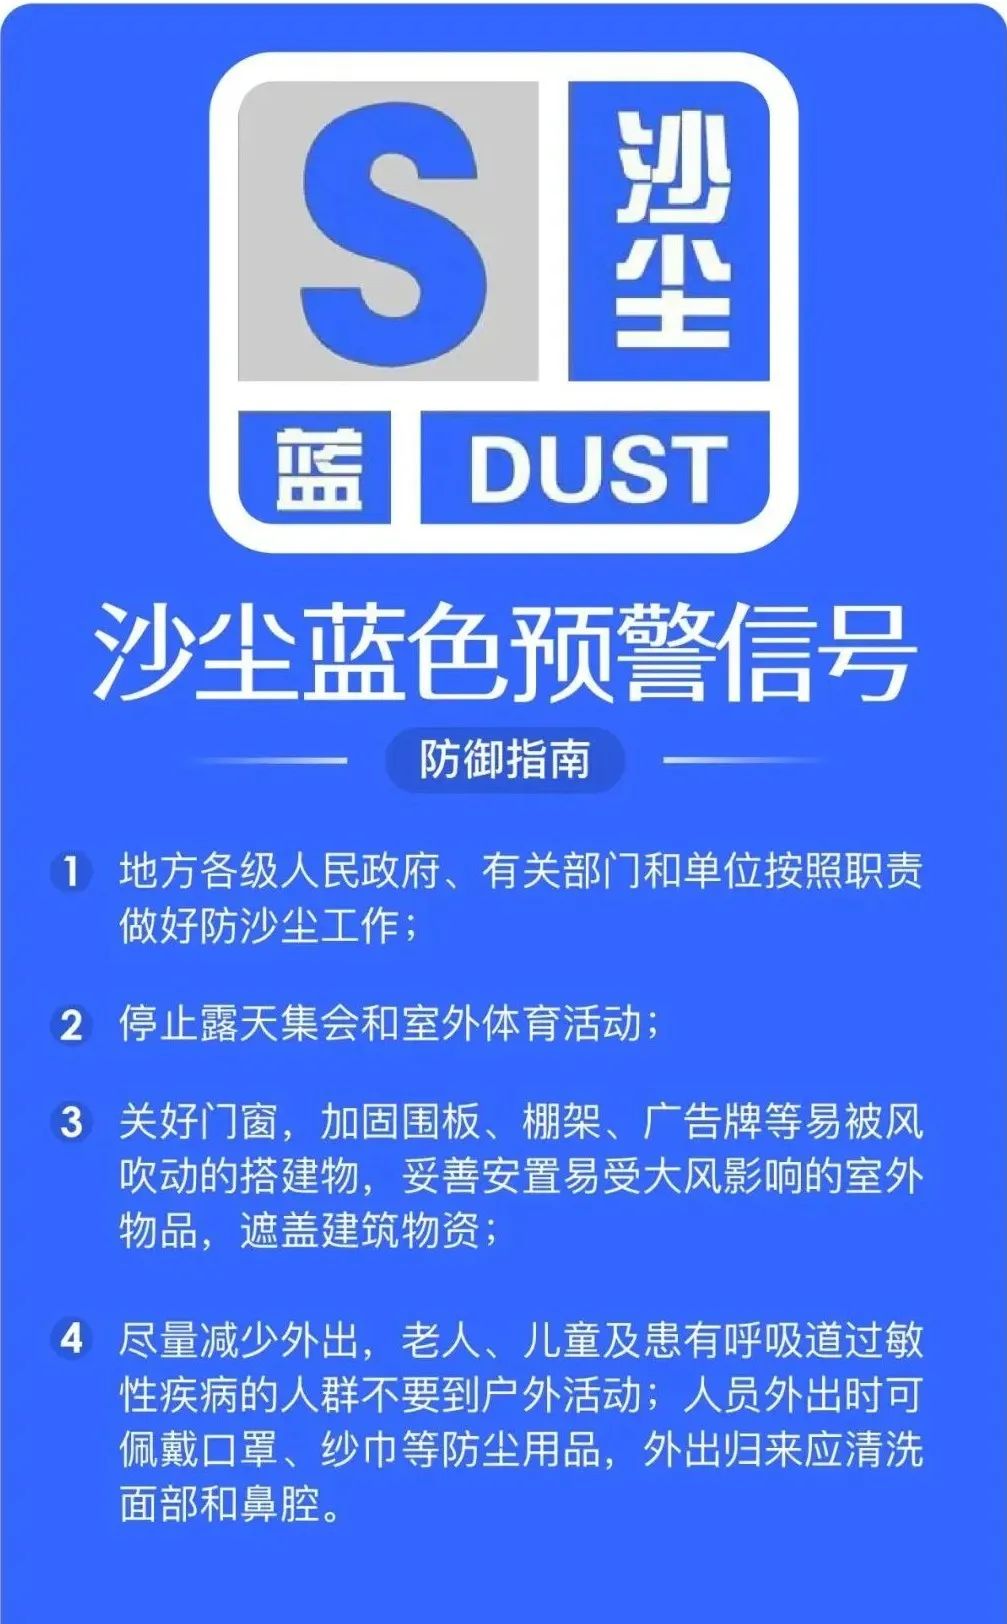 2024年3月27日13时15分,本市发布沙尘蓝色预警信号